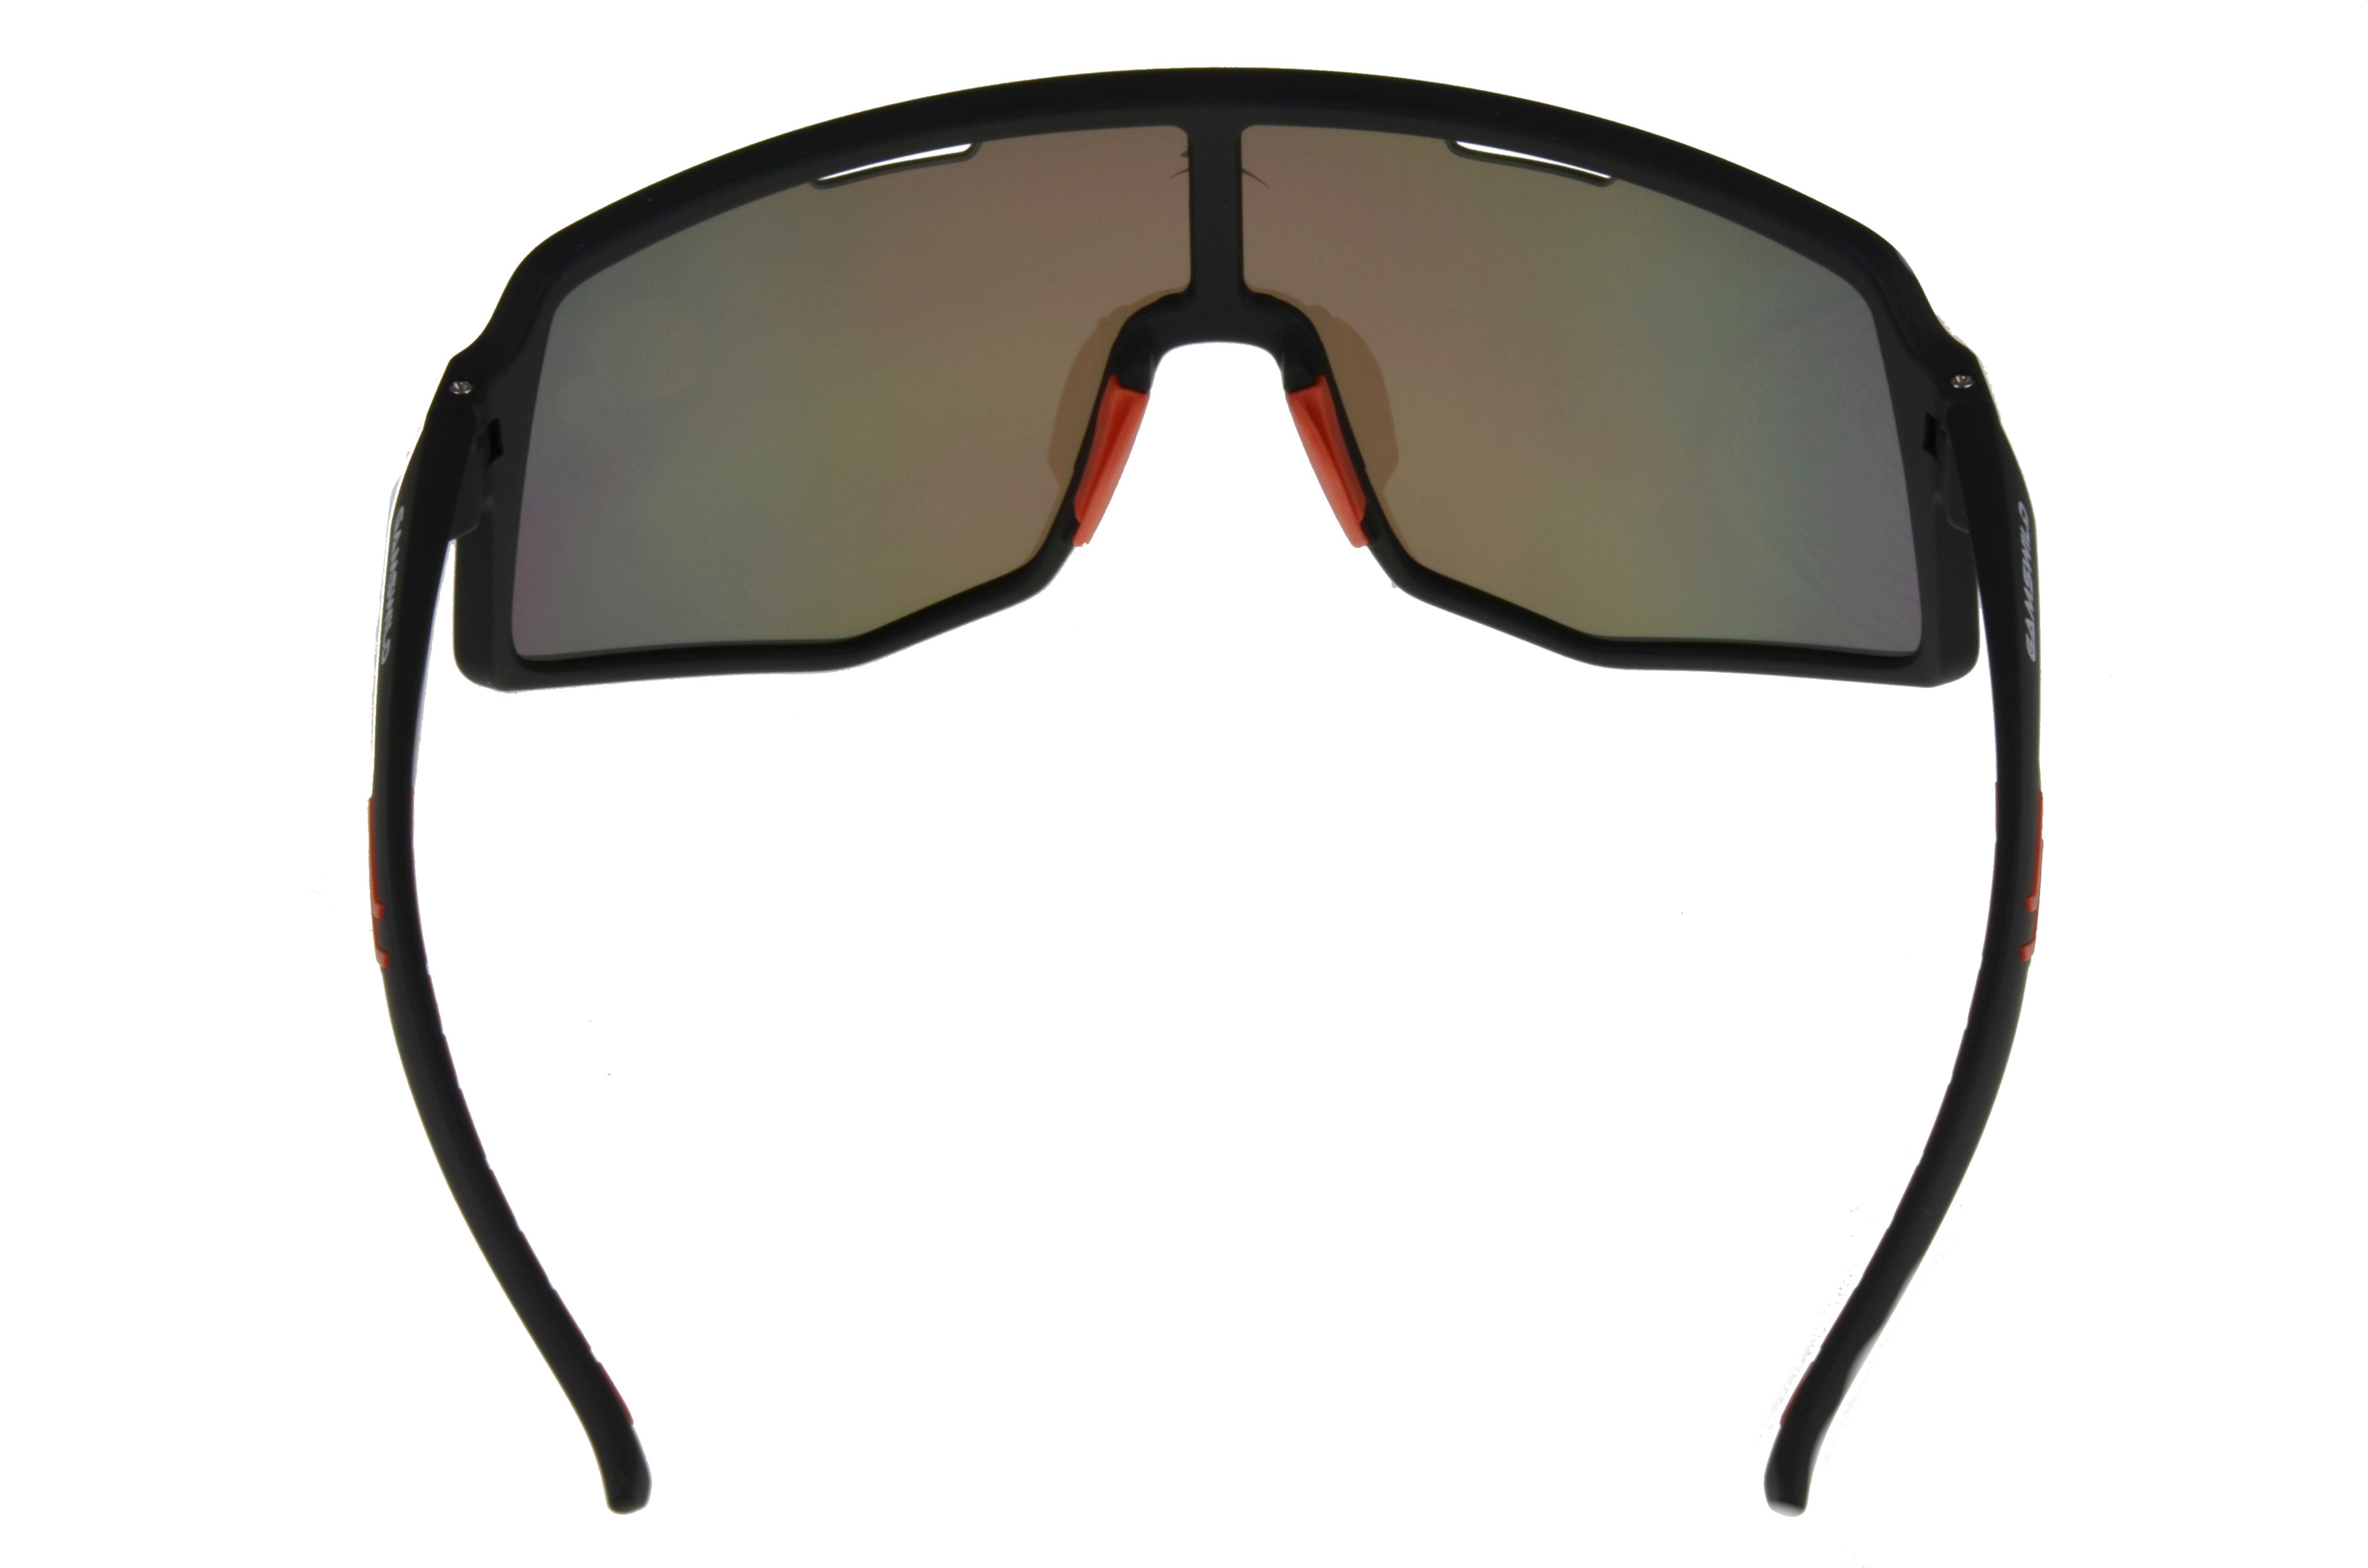 schwarz-rot, TR90 Herren Sonnenbrille WS4042 schwarz-blau, Unisex Unisex, Gamswild Sonnenbrille lila, Fahrradbrille Damen Skibrille grün